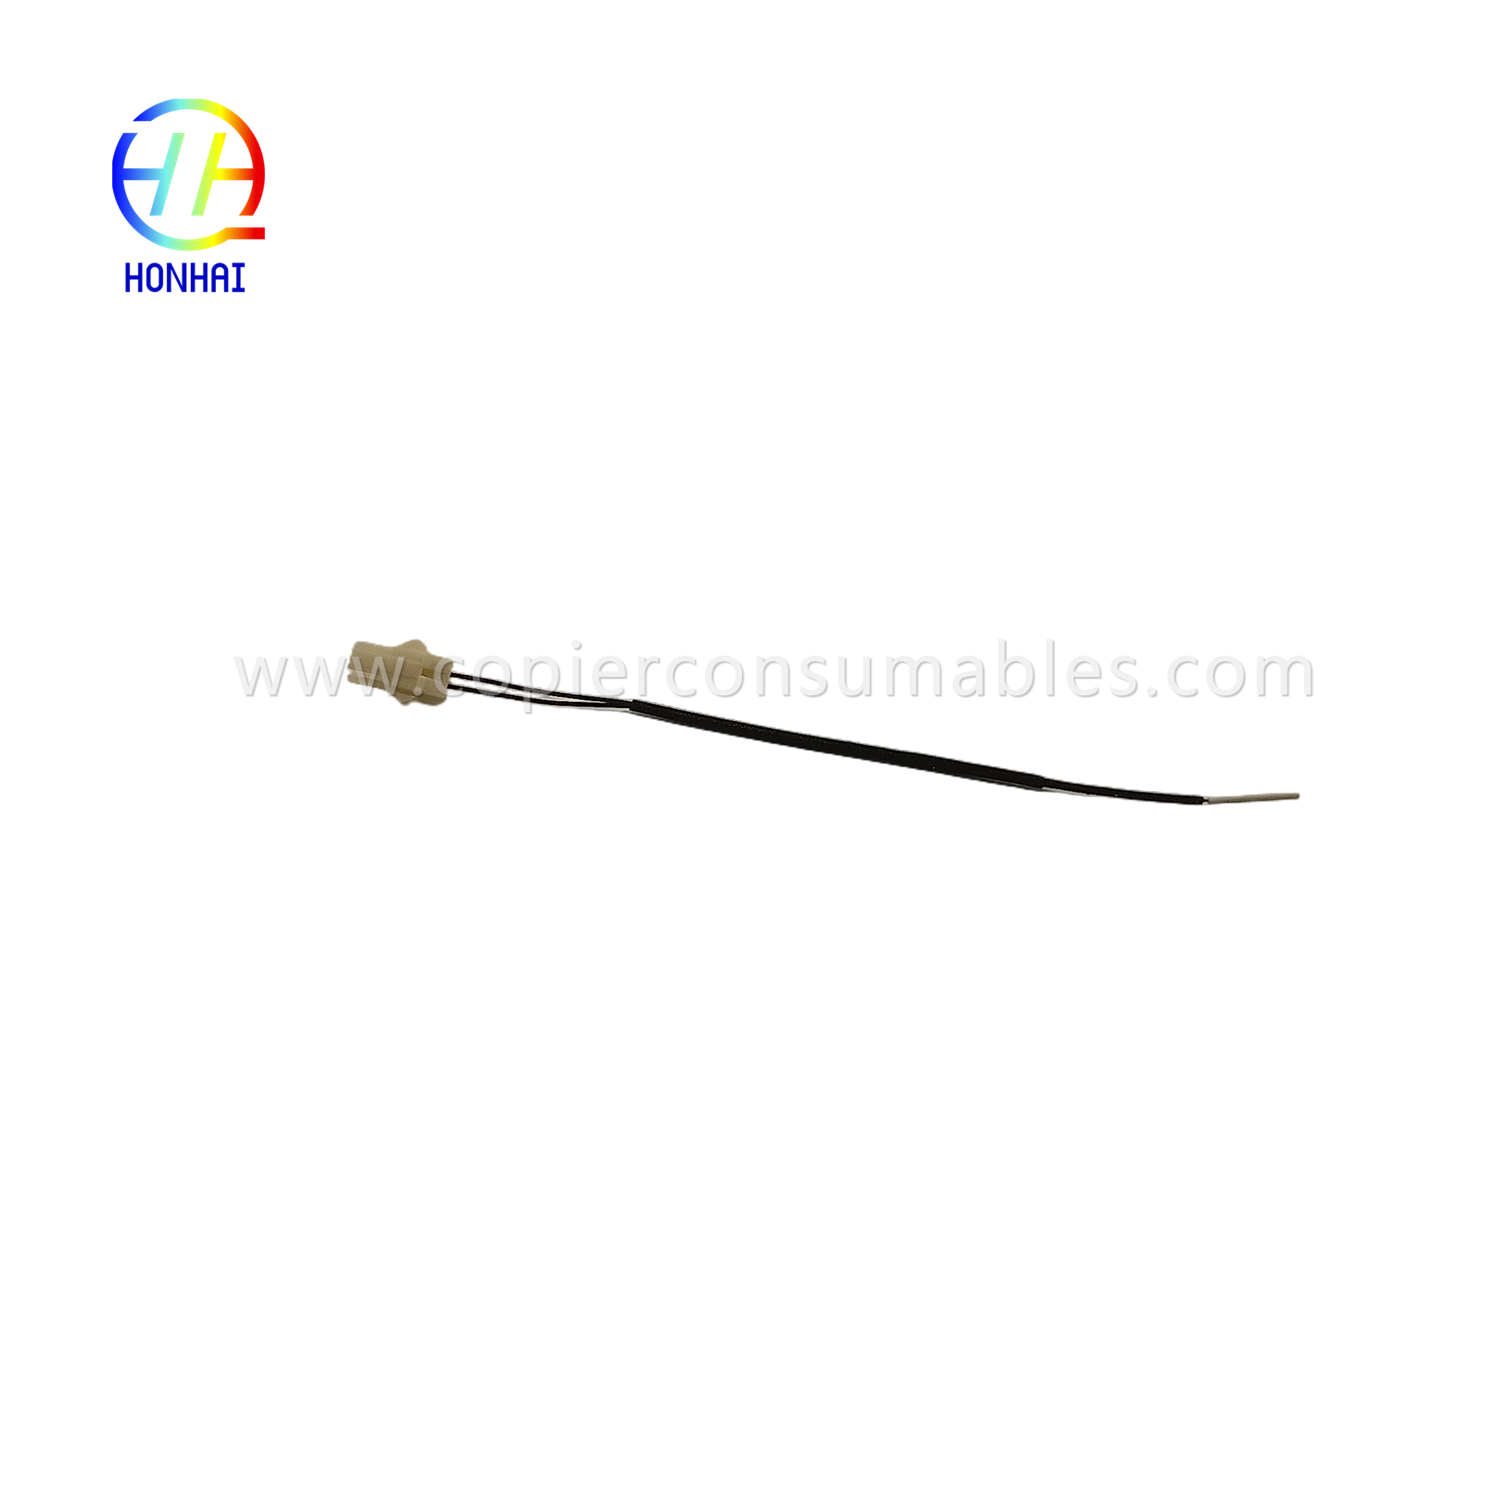 Fuzila termistoro por OCE 9400 TDS300 TDS750PW300350 (1)